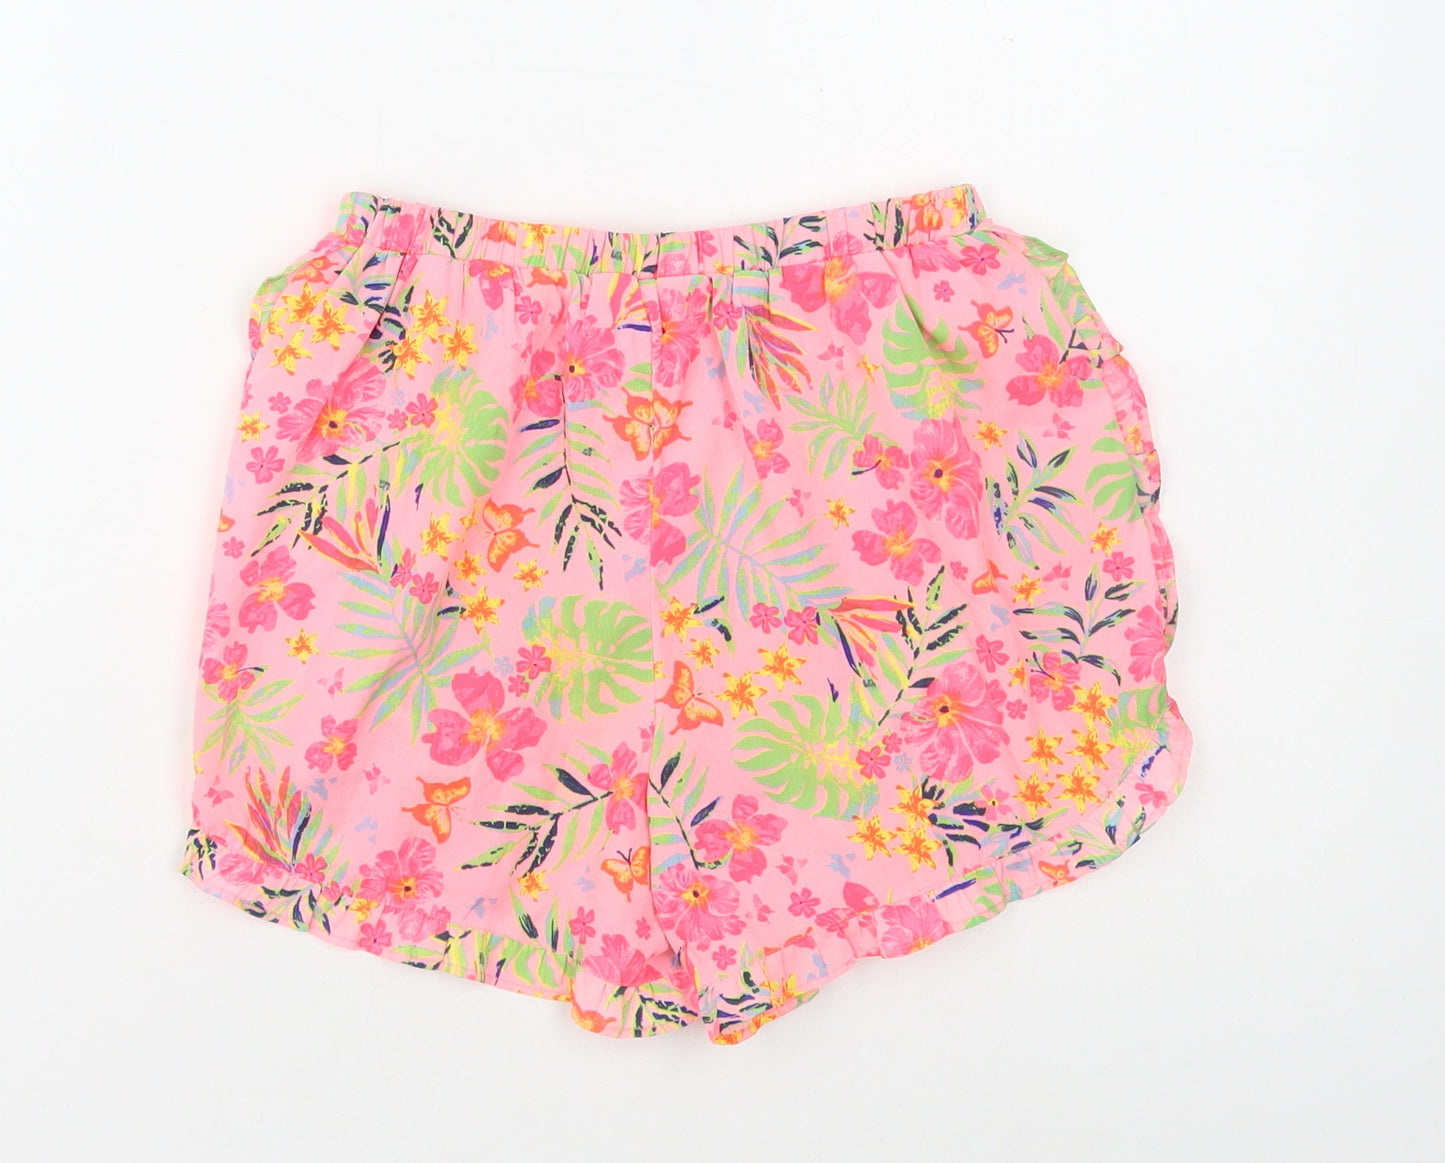 Primark Girls Pink Floral Polyester Sweat Shorts Size 9-10 Years Regular Drawstring - Tropical print